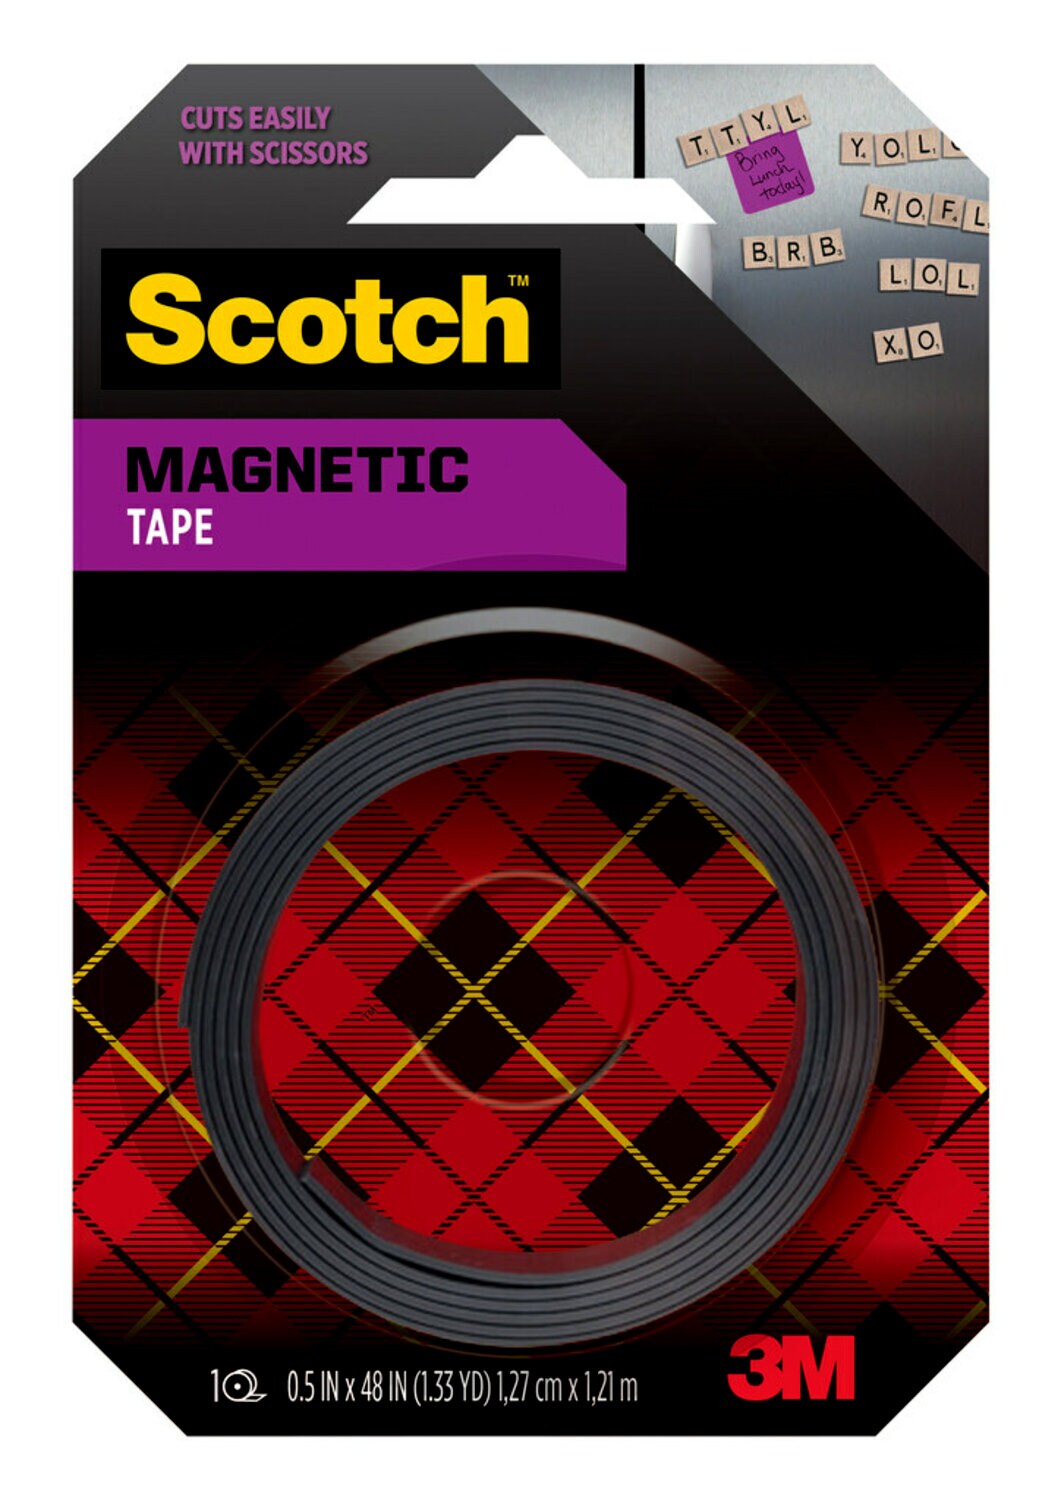 7100237866 - Scotch Magnetic Tape MT004.5S, 0.5 in x 48 in (1.27 cm x 1.21 m)